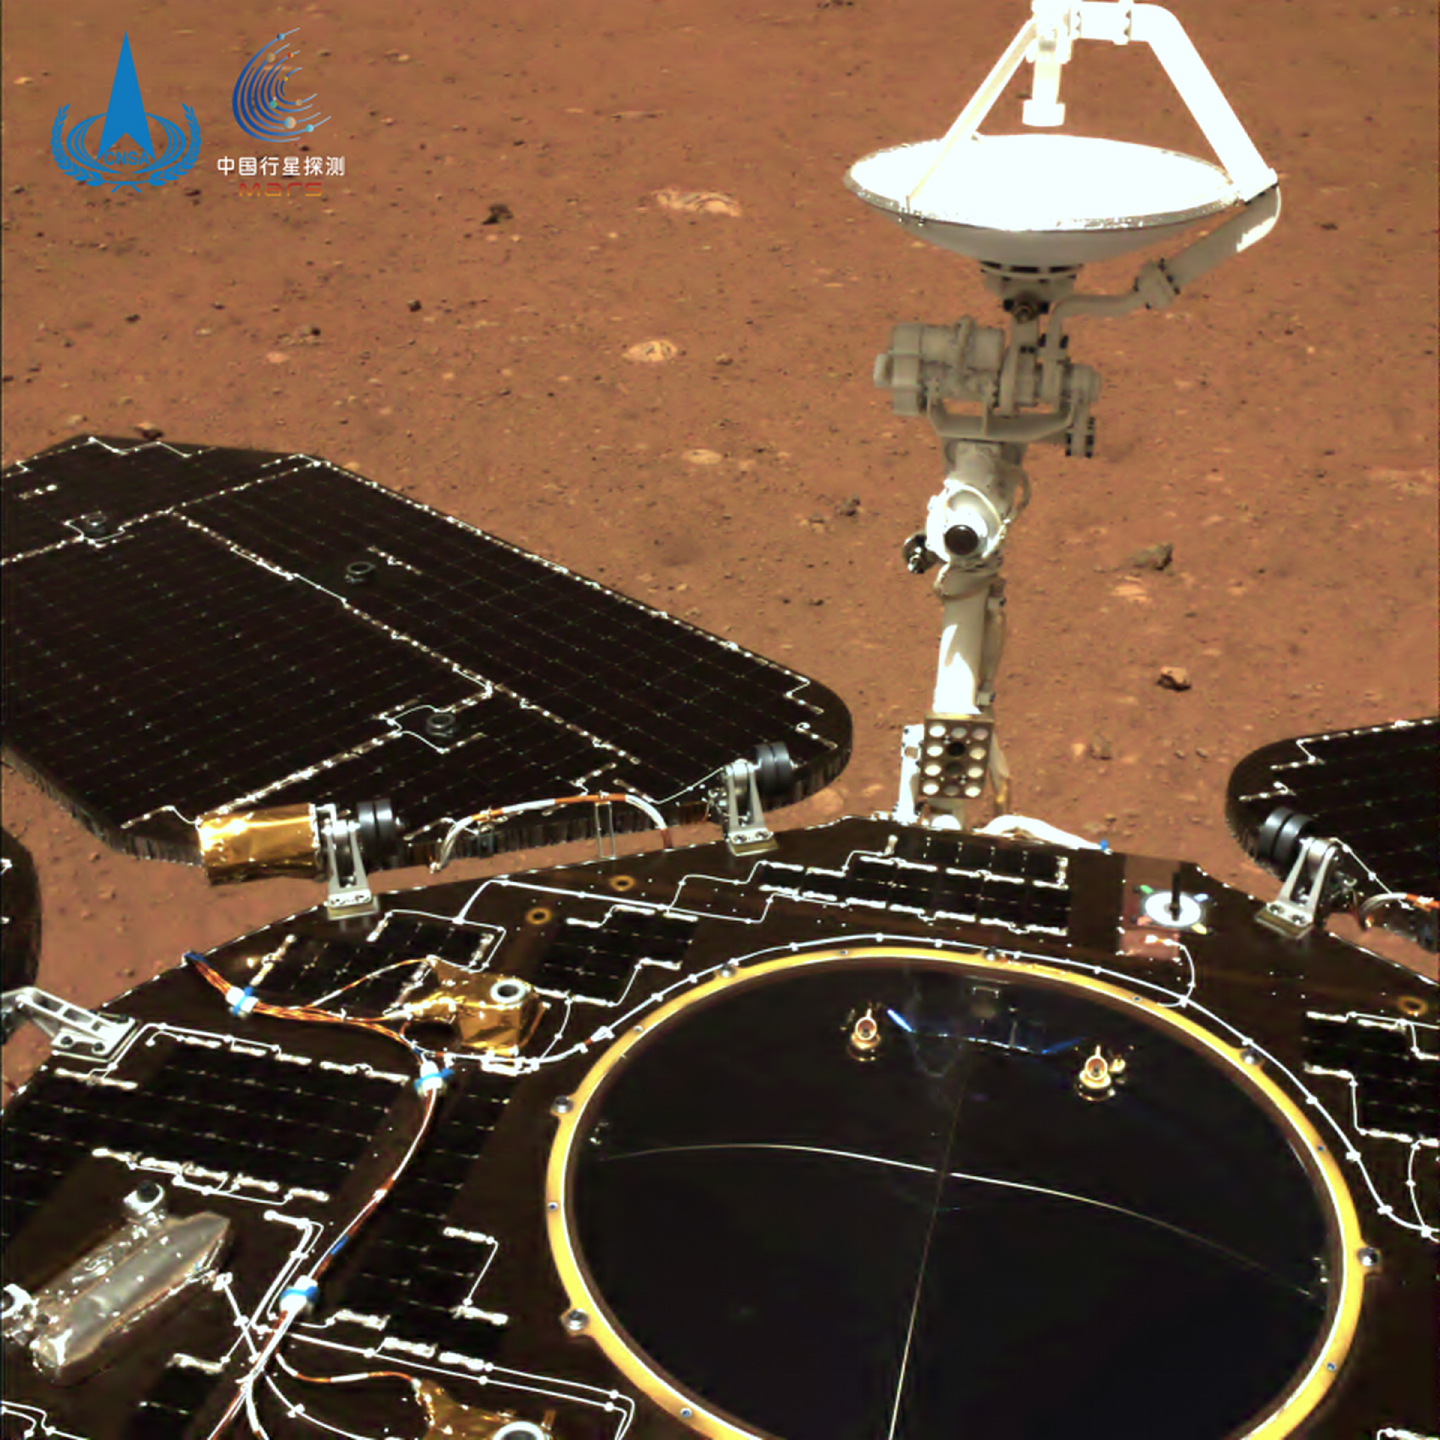 拍摄于2021年5月19日（着陆后第5火星日），火星车表面无沙尘覆盖。（微信@中国探月工程）